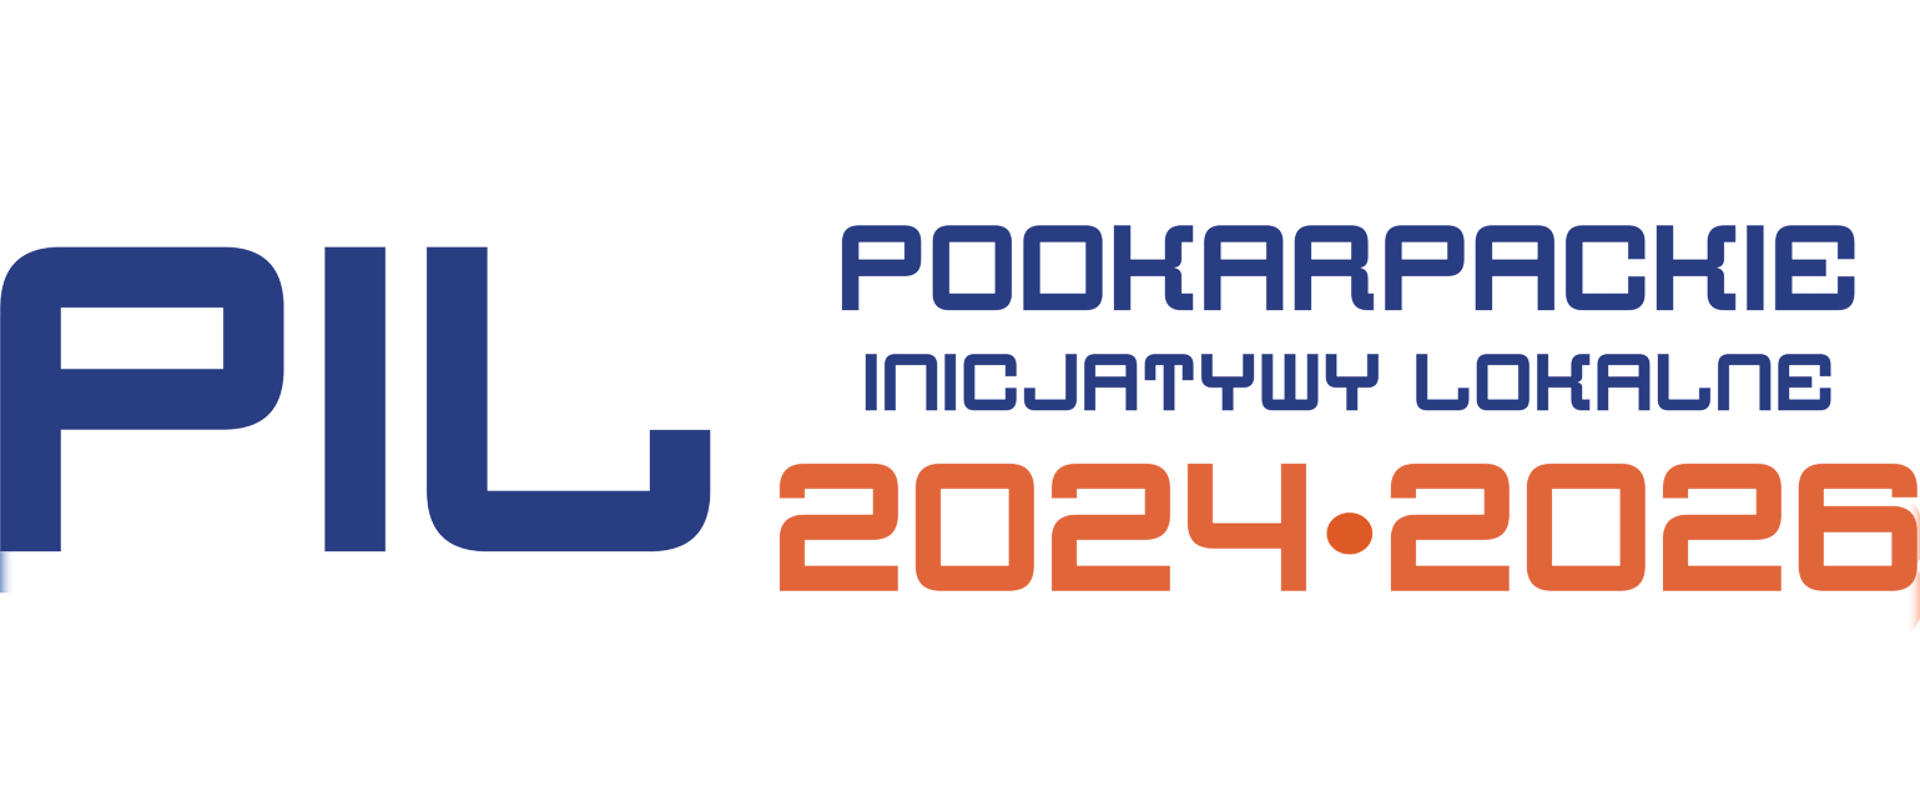 Napis w kolorze niebieskim "Podkarpackie Inicjatywy Lokalna" oraz kolorze pomarańczowym "2024-2026"